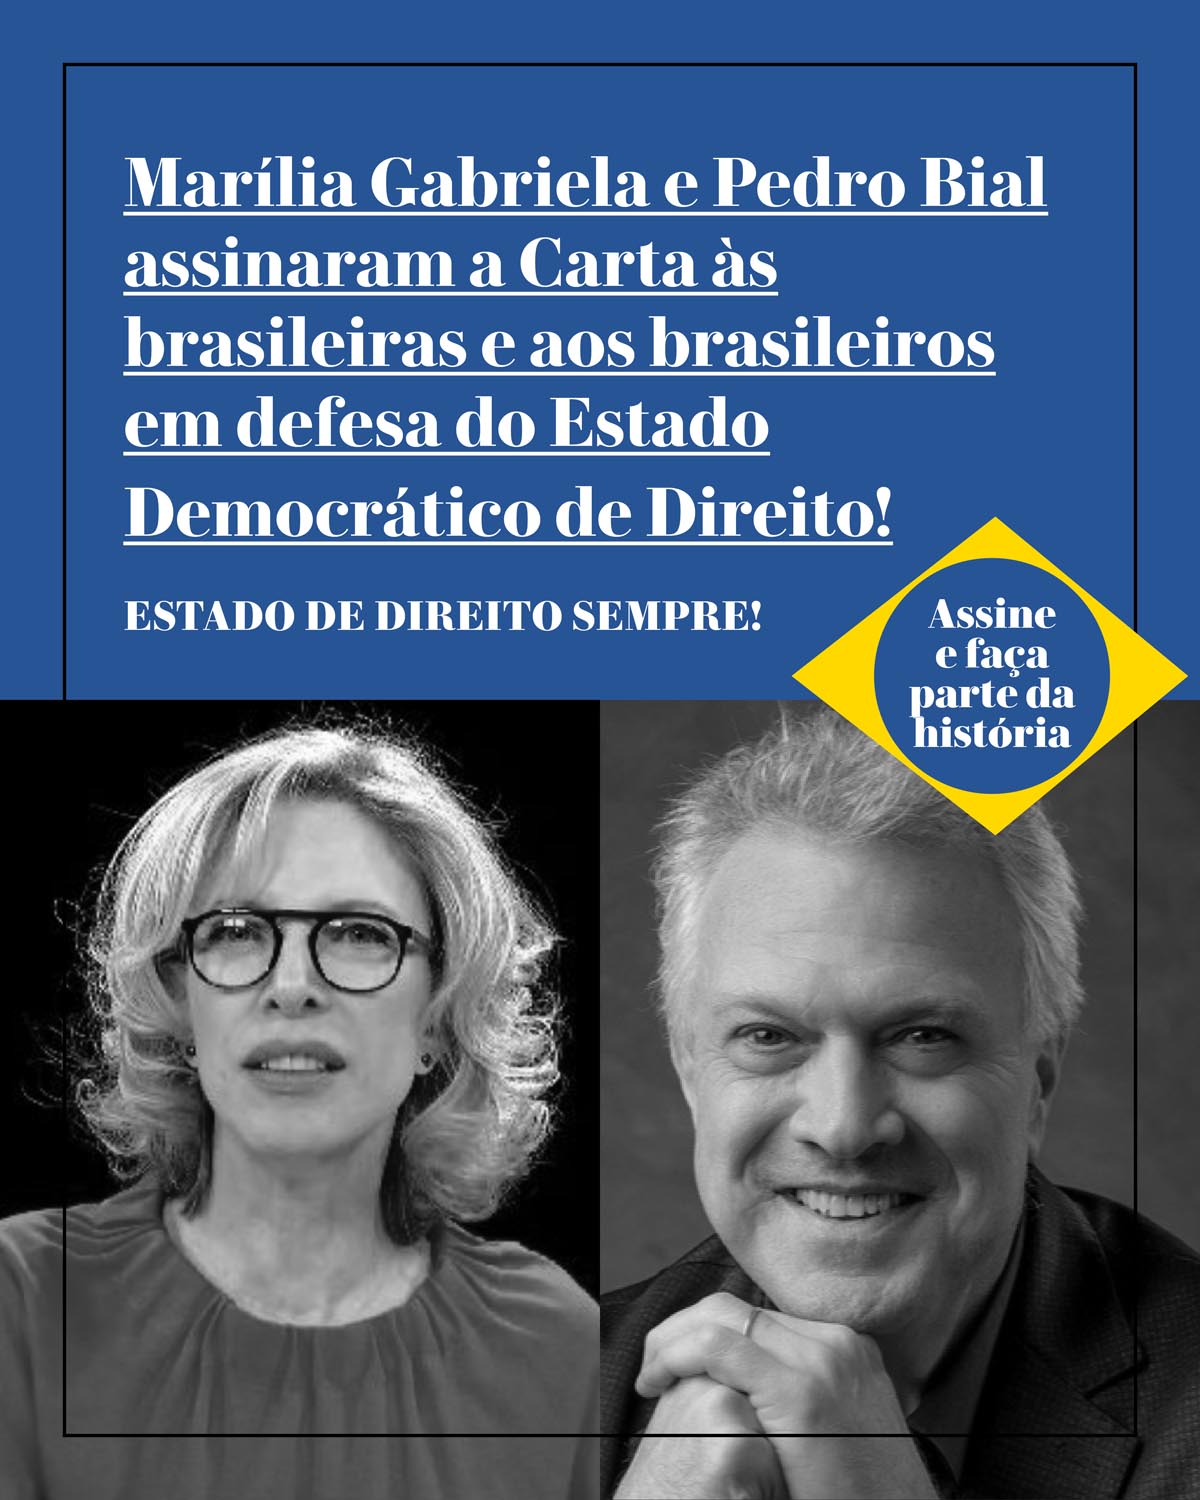 Marília Gabriela e Pedro Bial assinaram a Carta às brasileiras e aos brasileiros em defesa do Estado Democrático de Direito!